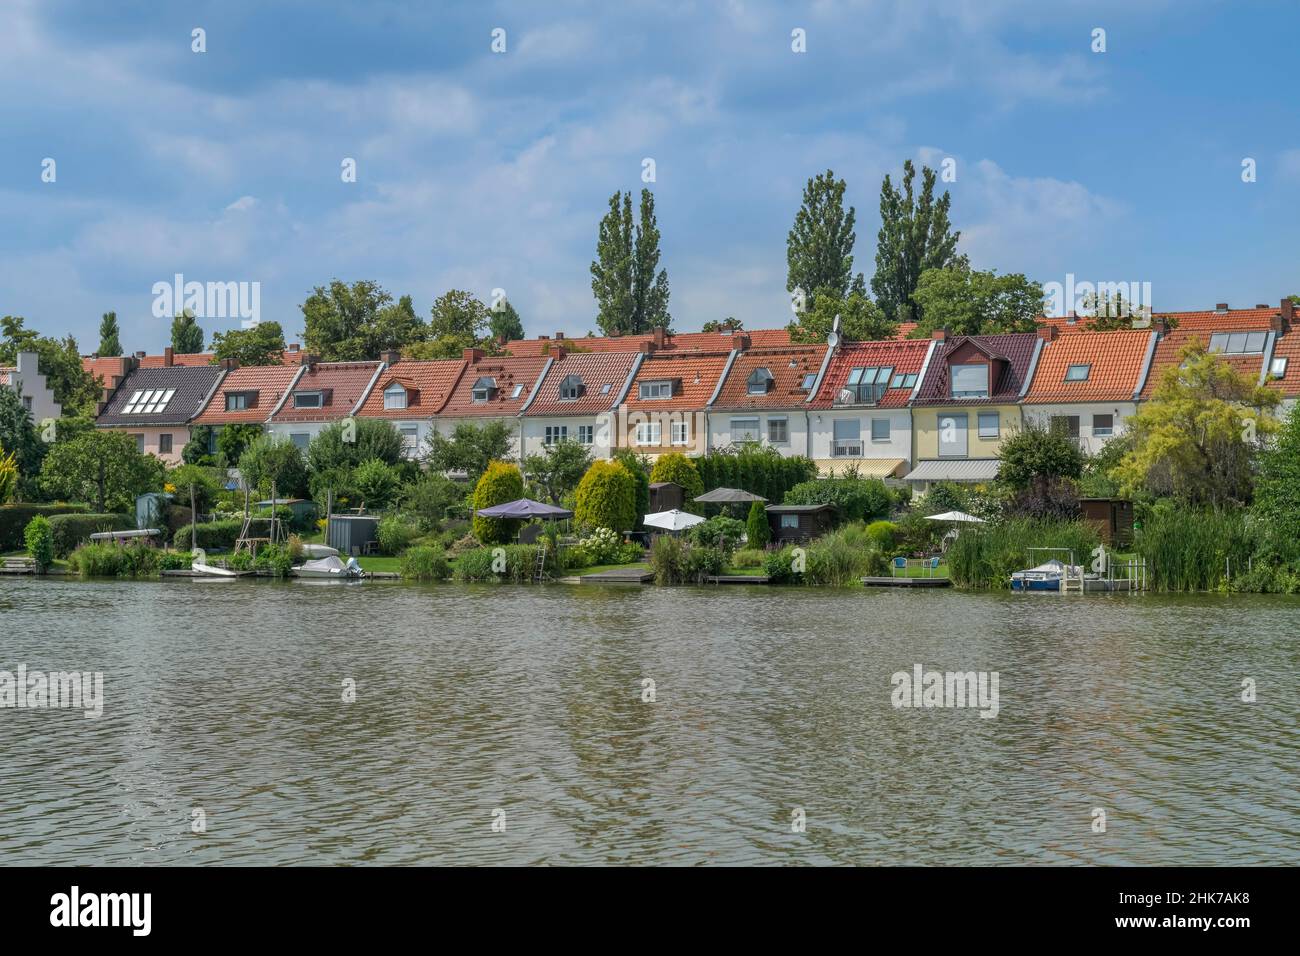 Residential buildings, Grimnitzsee, Wilhelmstadt, Spandau, Berlin, Germany Stock Photo